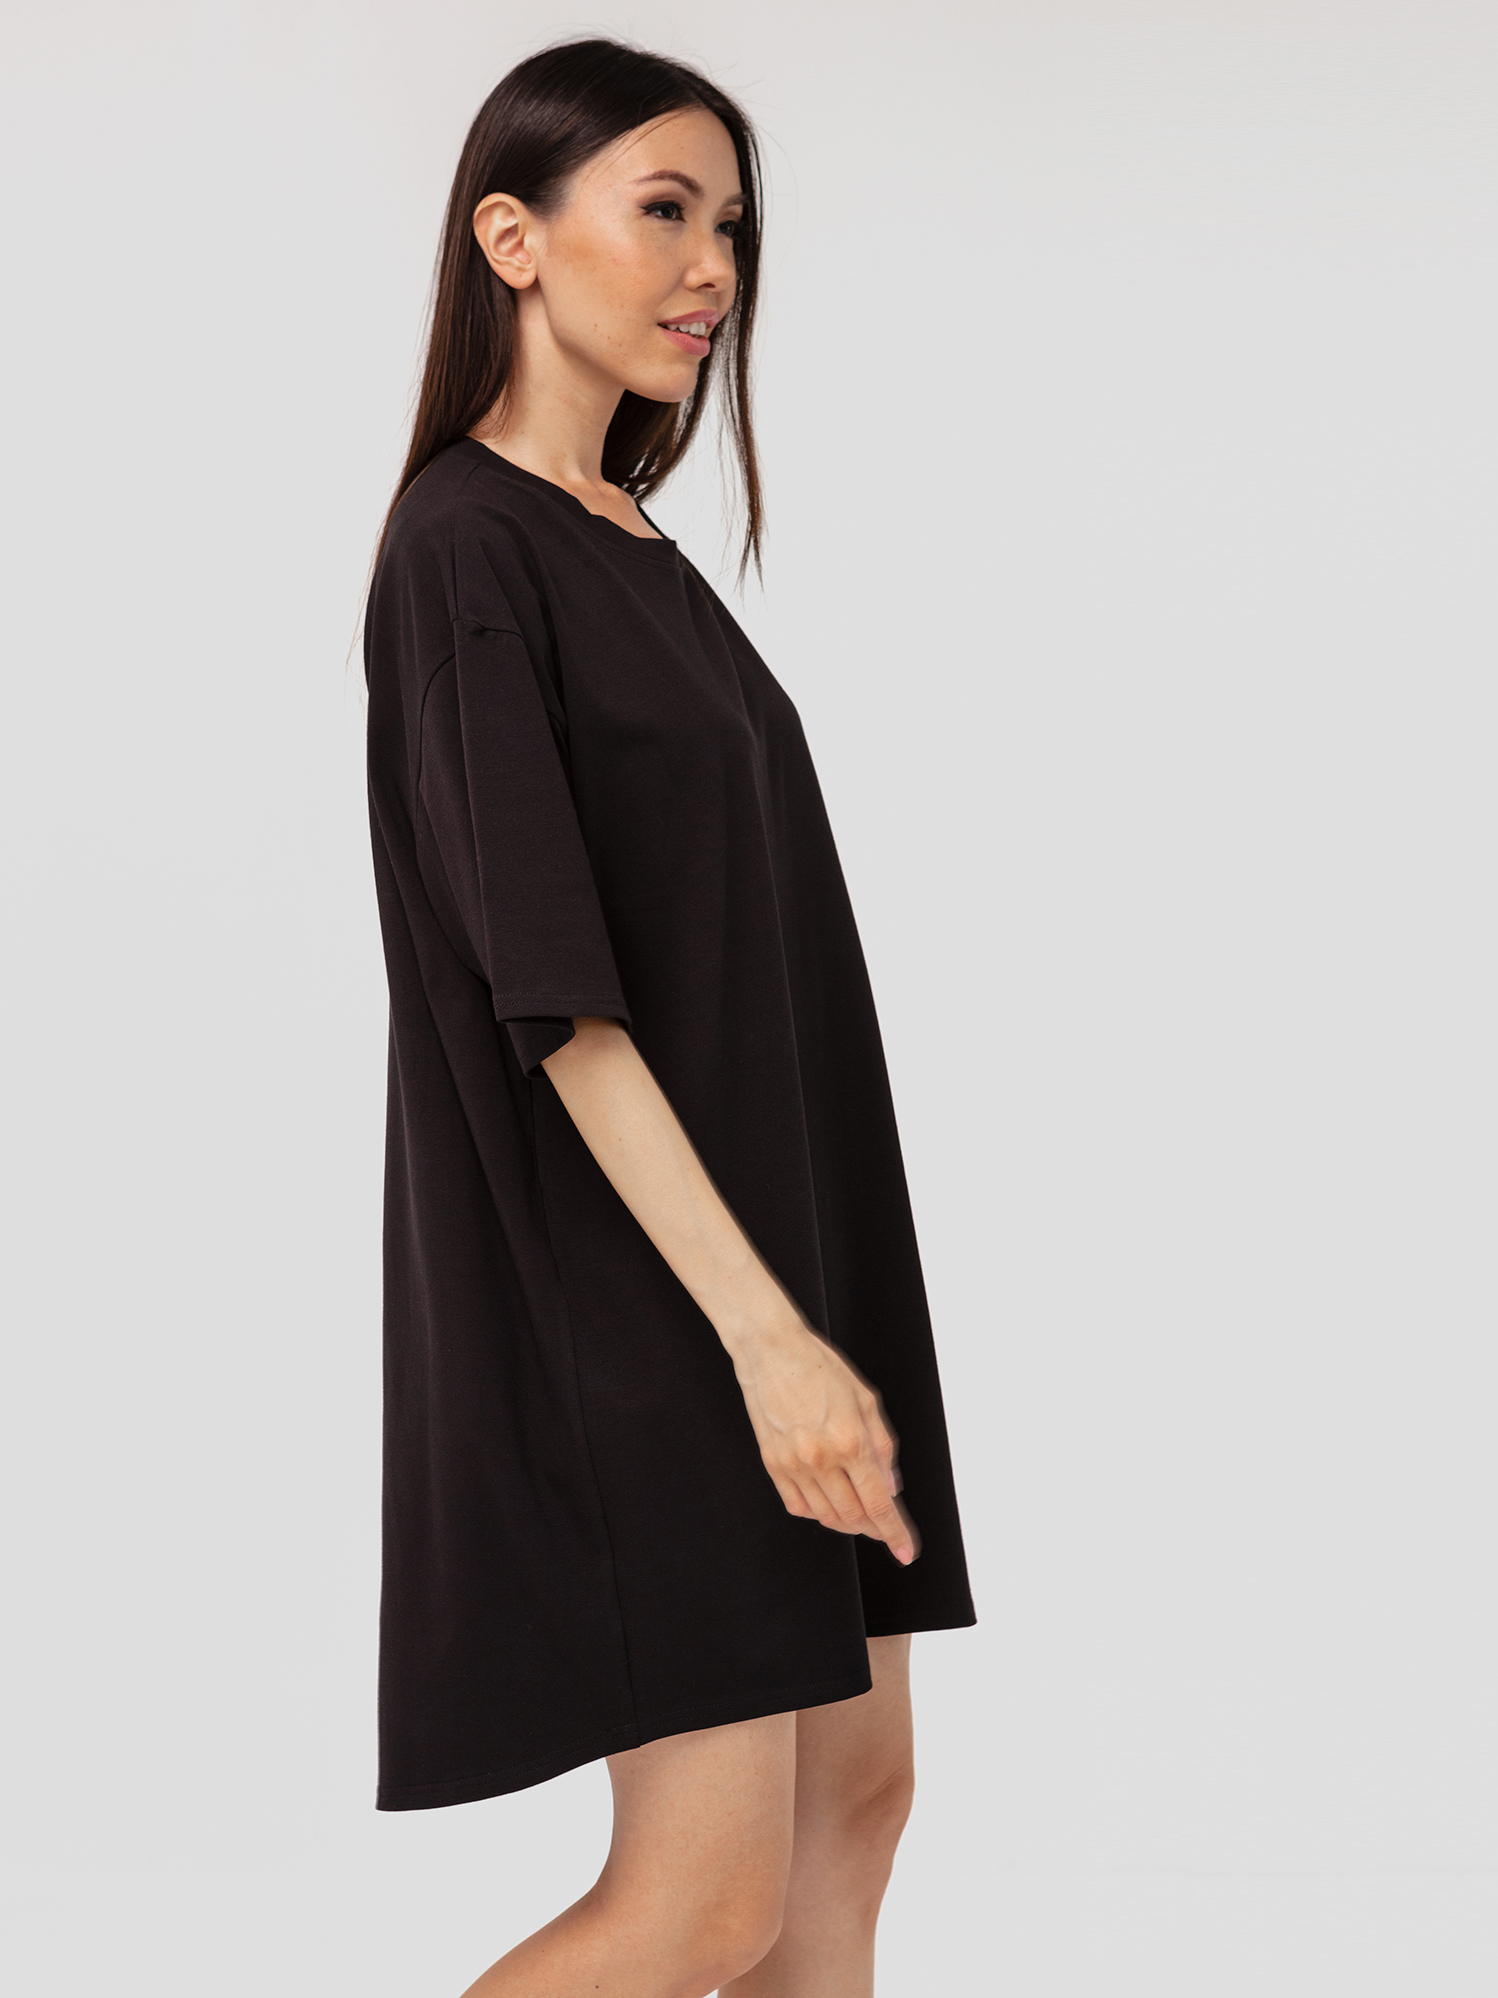 Платье-футболка хлопковое черное YOS от украинского бренда Your Own Style